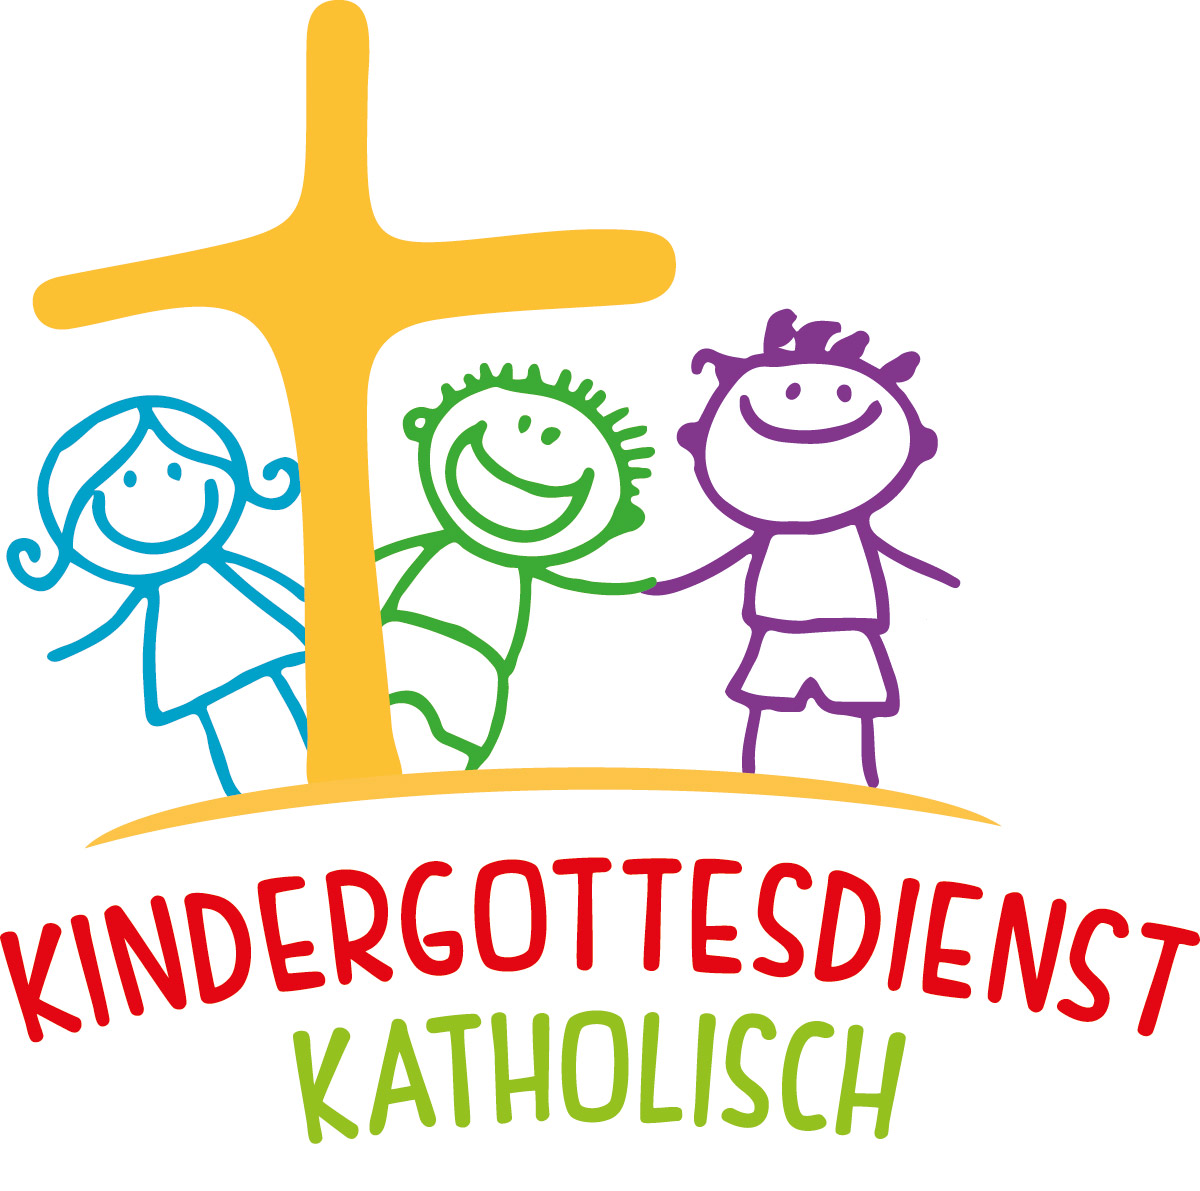 logo-kindergottesdienst-katholisch